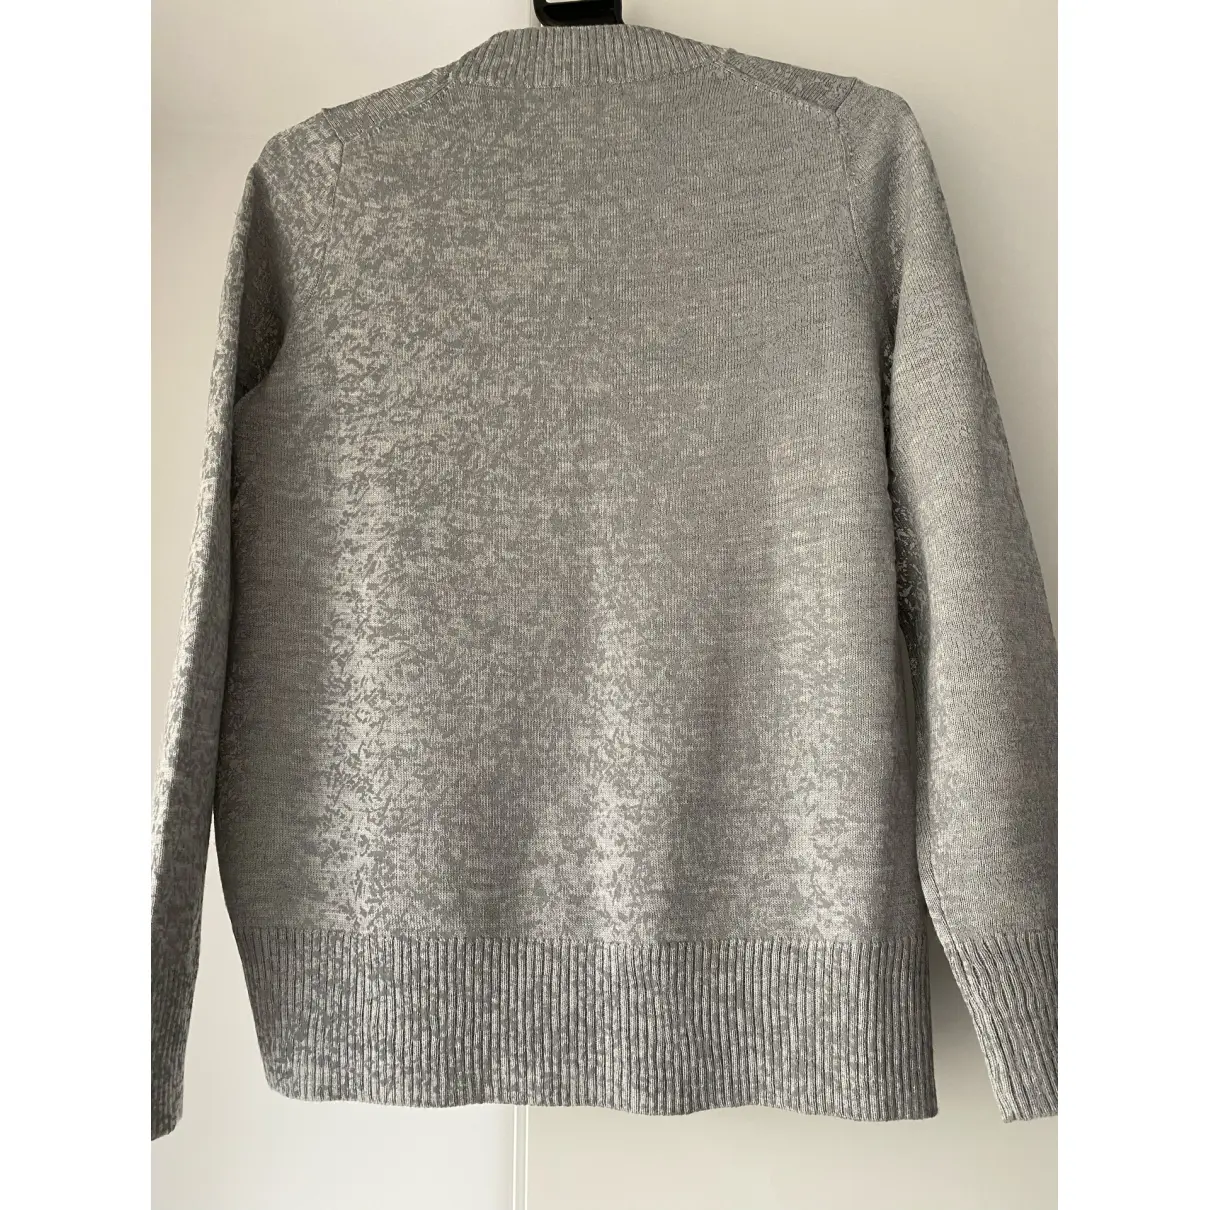 Buy Cos Wool jumper online